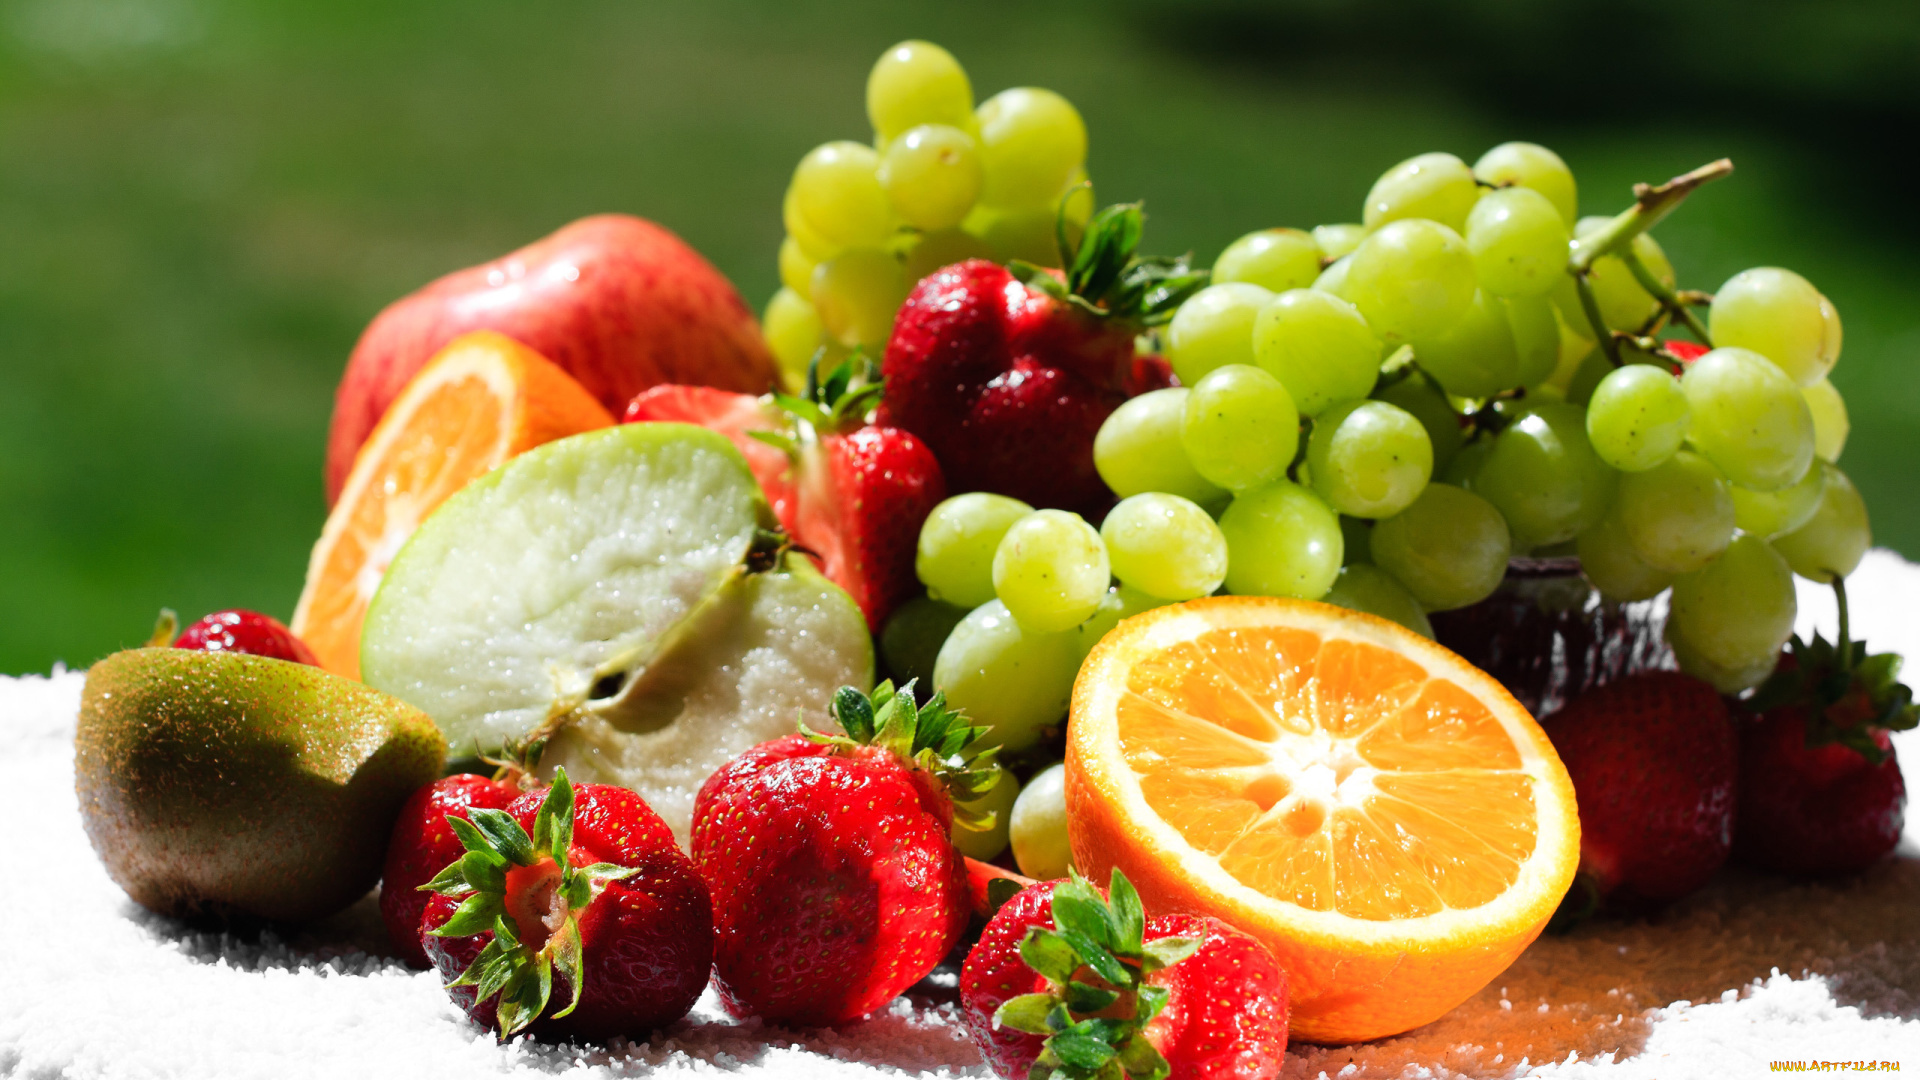 еда, фрукты, ягоды, виноград, киви, лимон, клубника, ягода, яблоко, апельсин